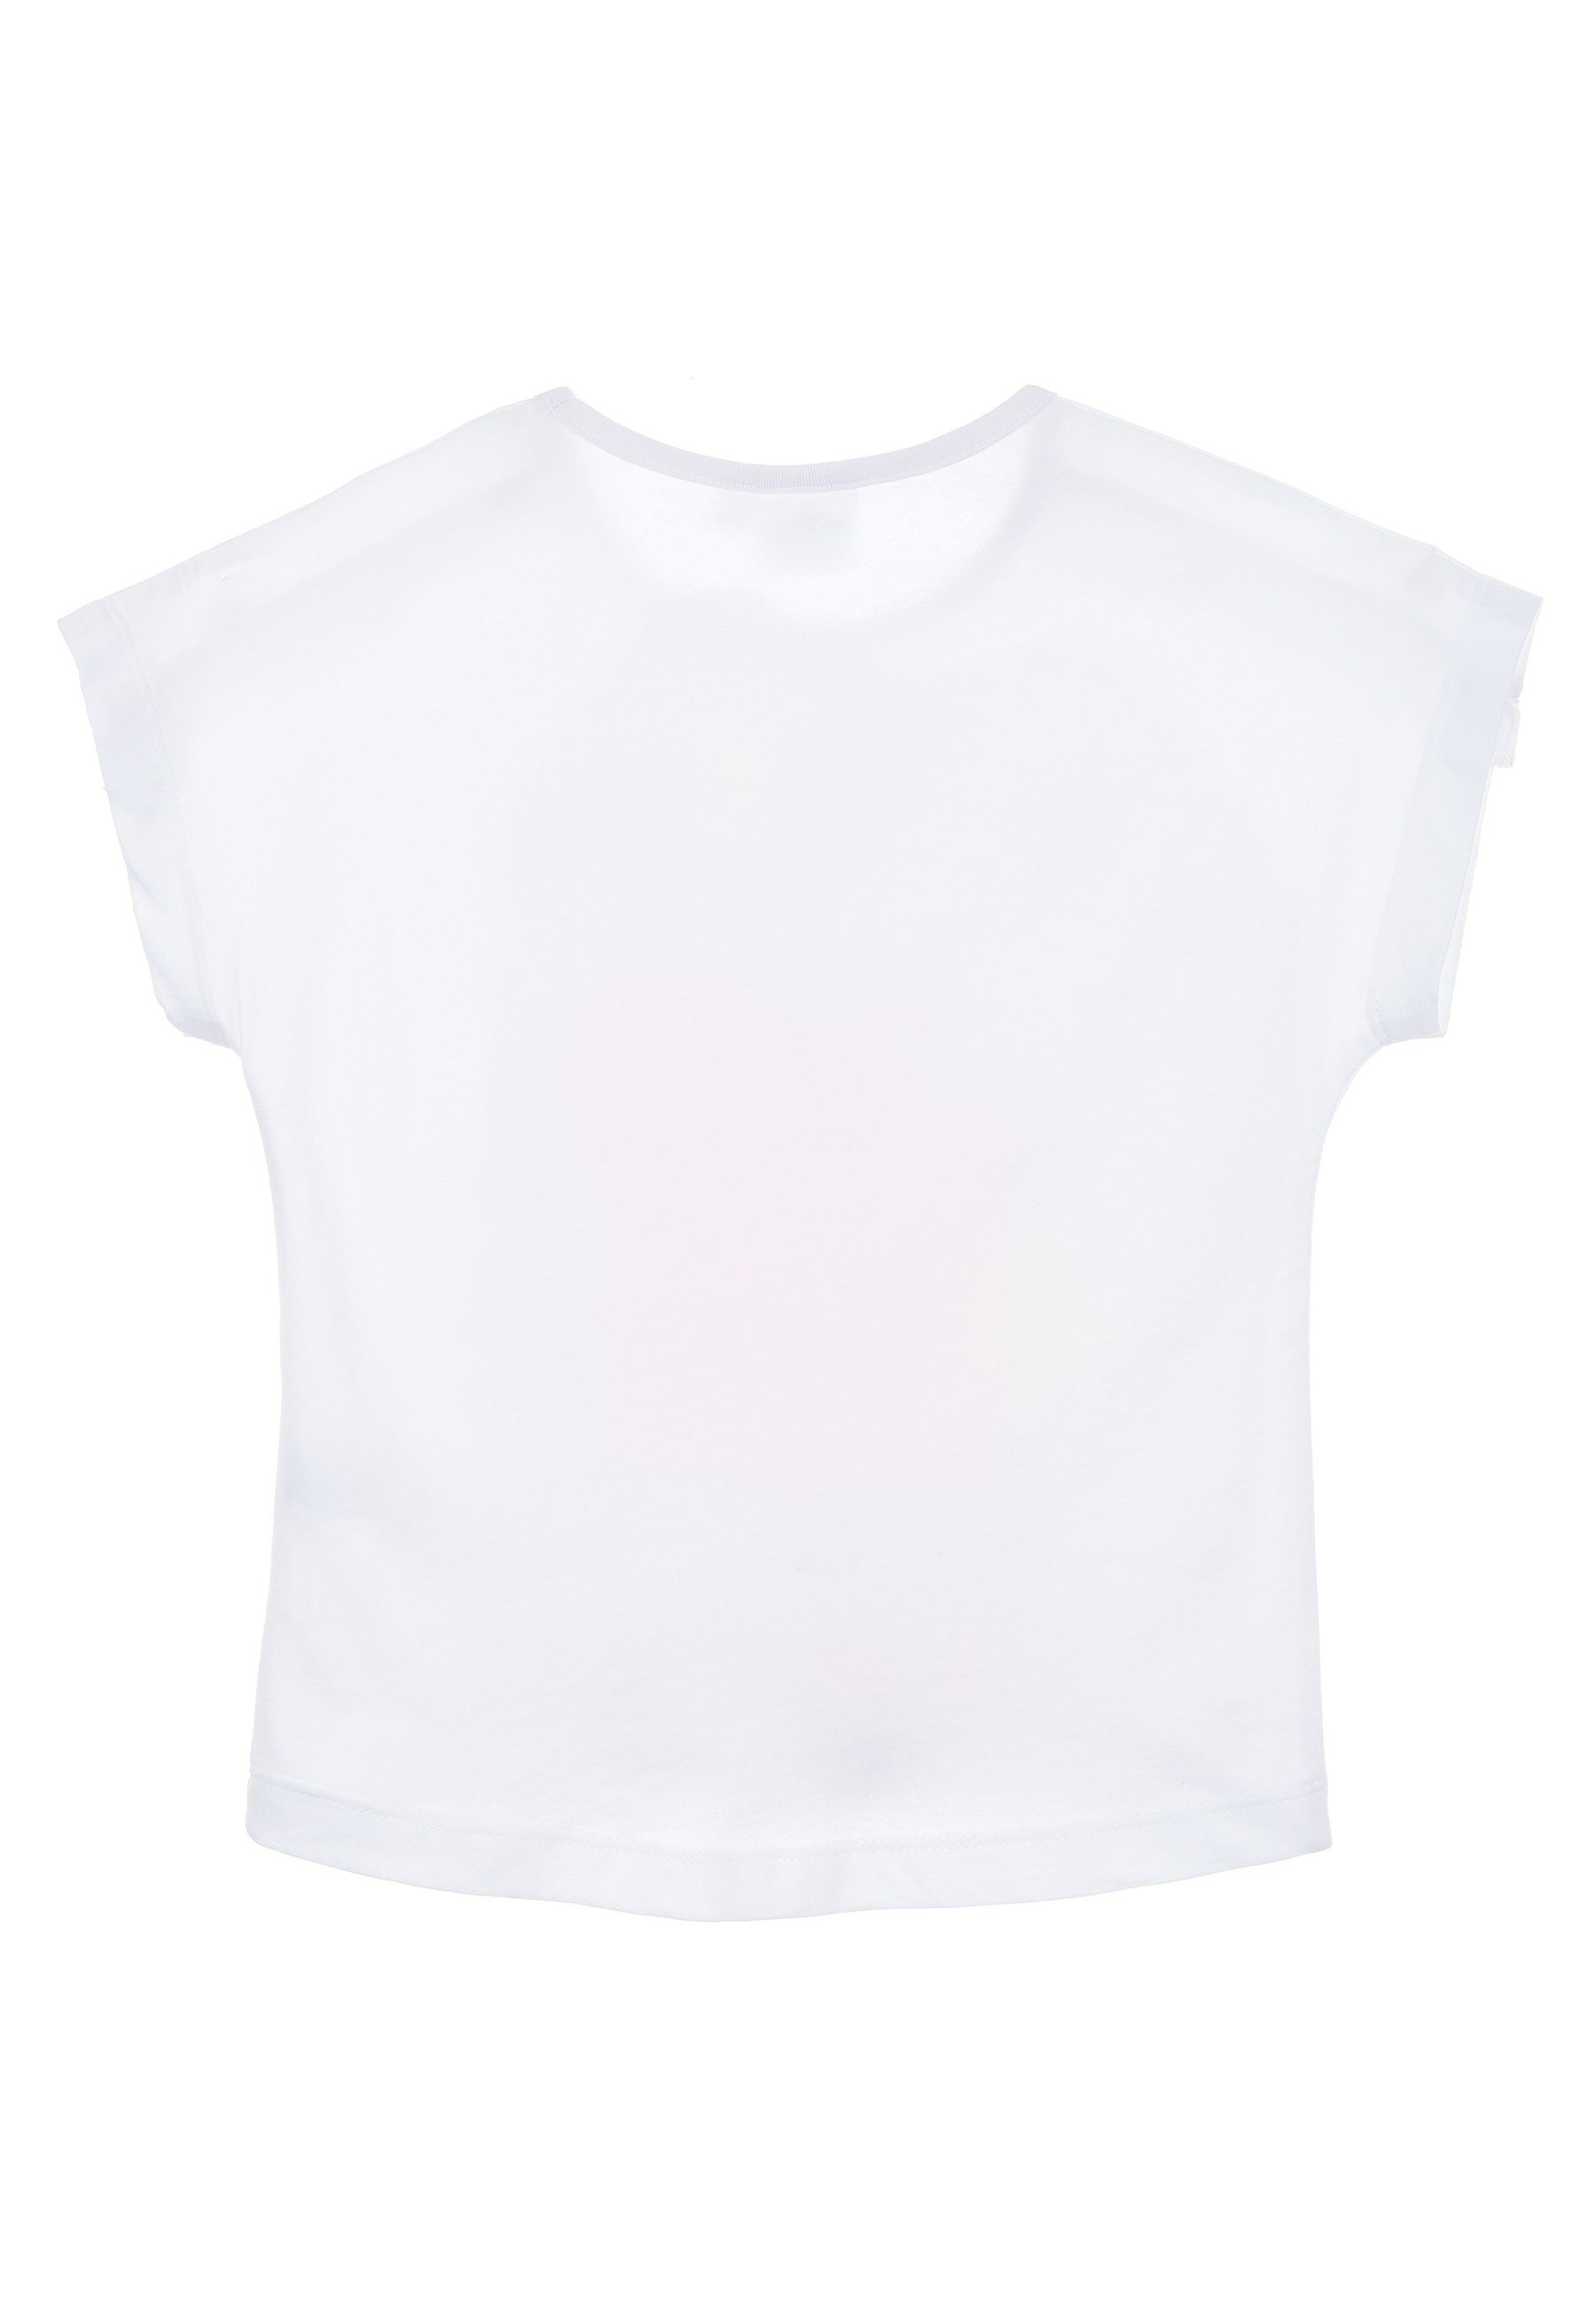 Peppa Pig Mädchen T-Shirt Kurzarm-Shirt Weiß Oberteil